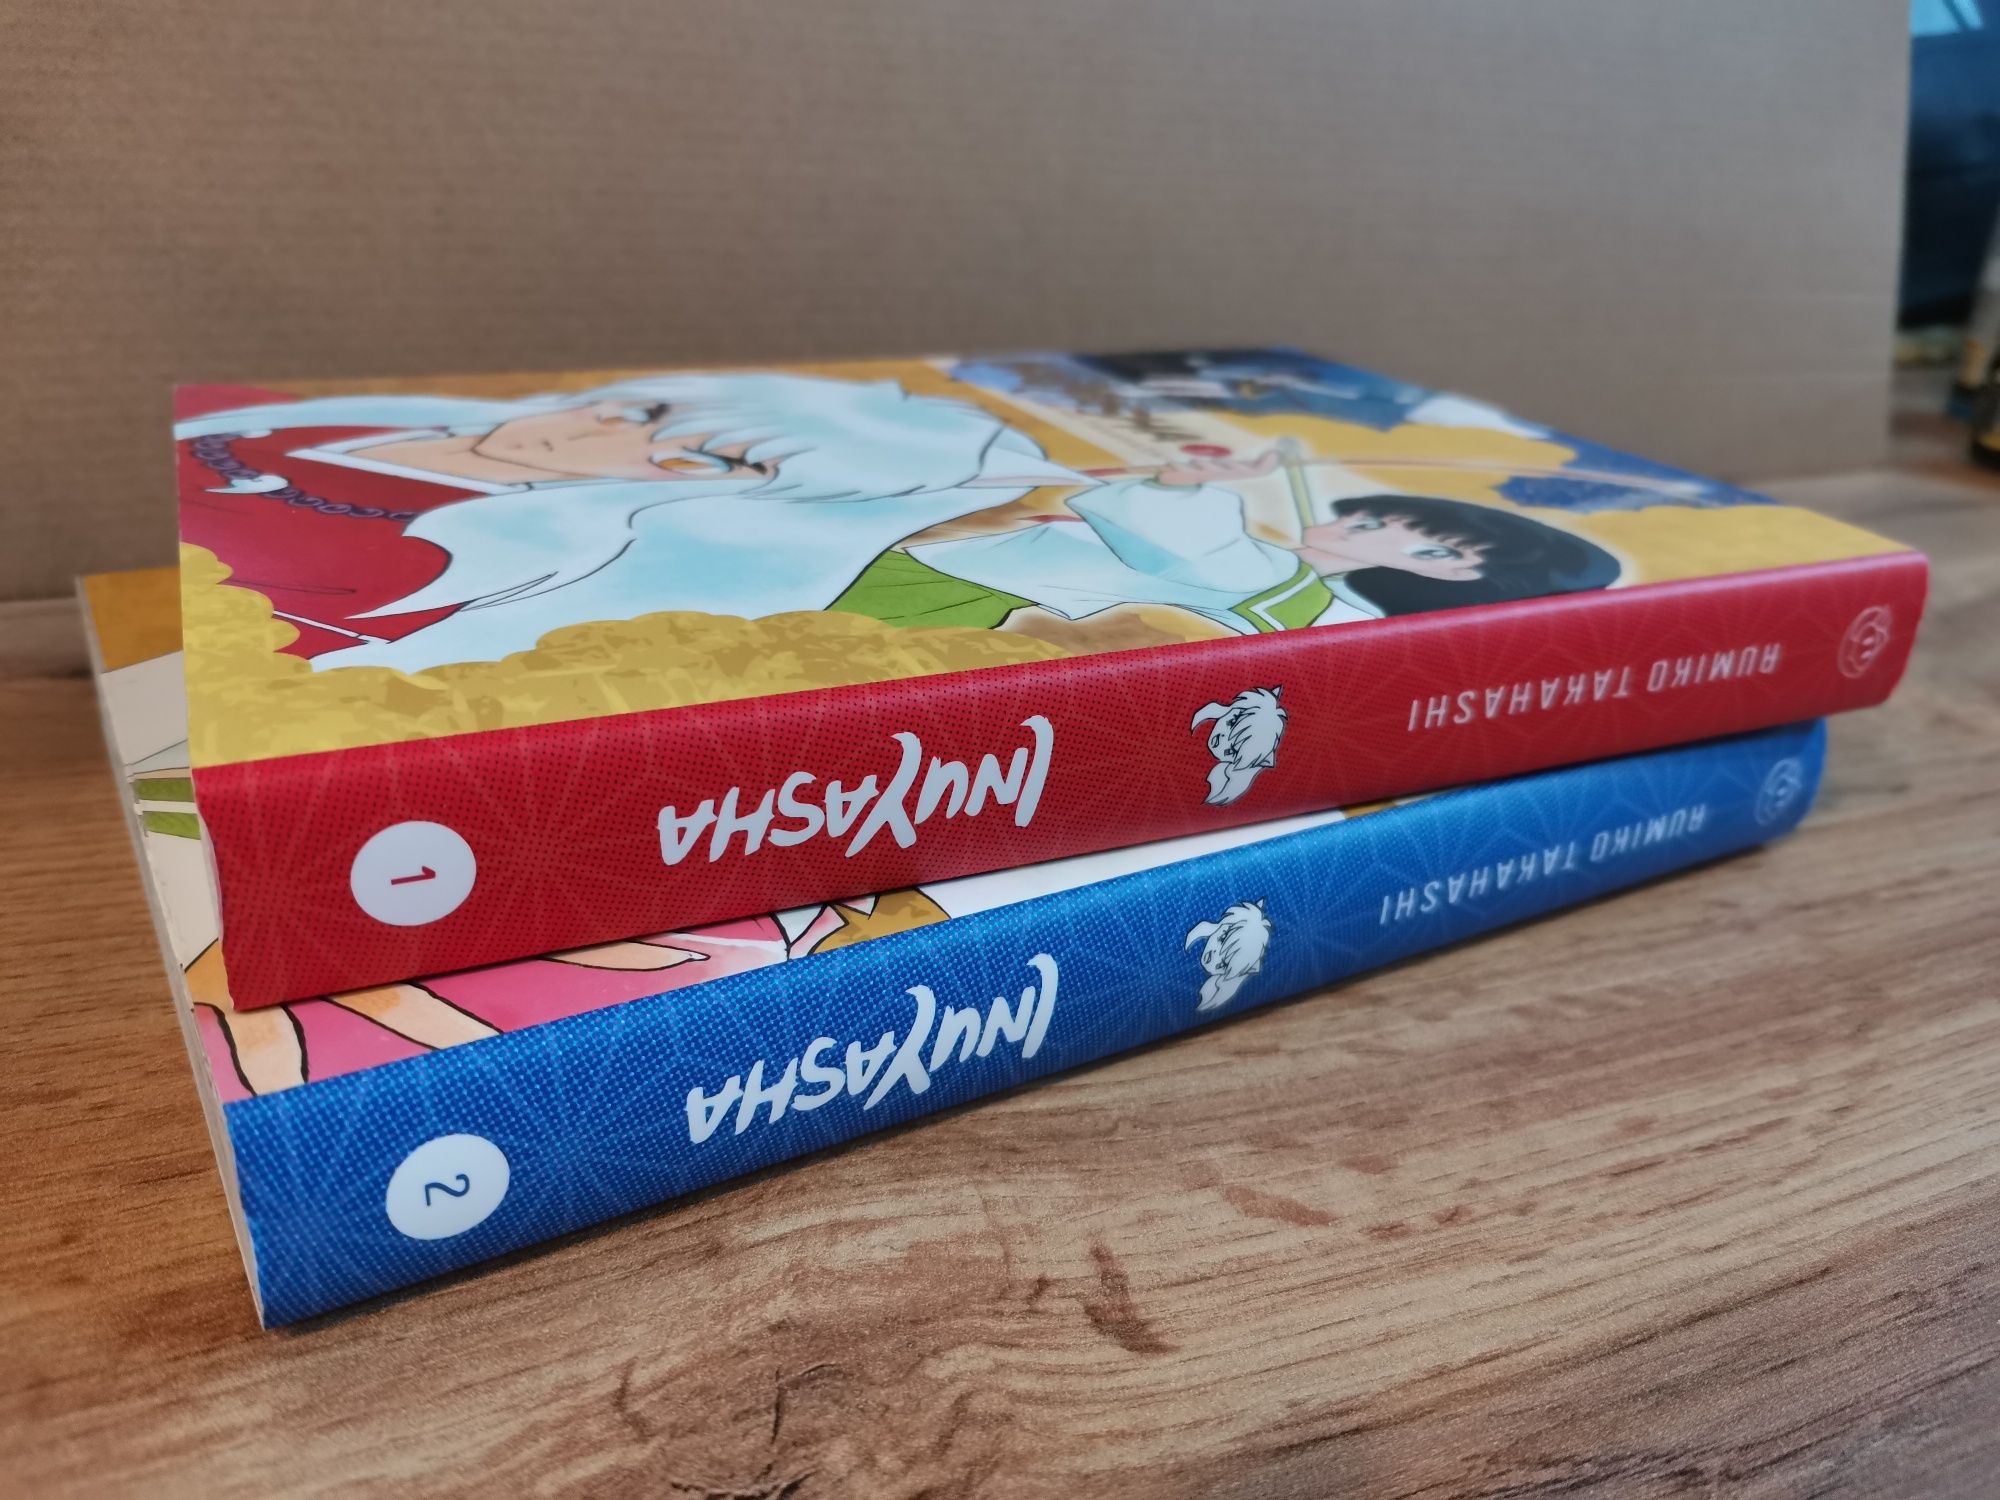 Manga Inuyasha tom 1-2 miękka oprawa